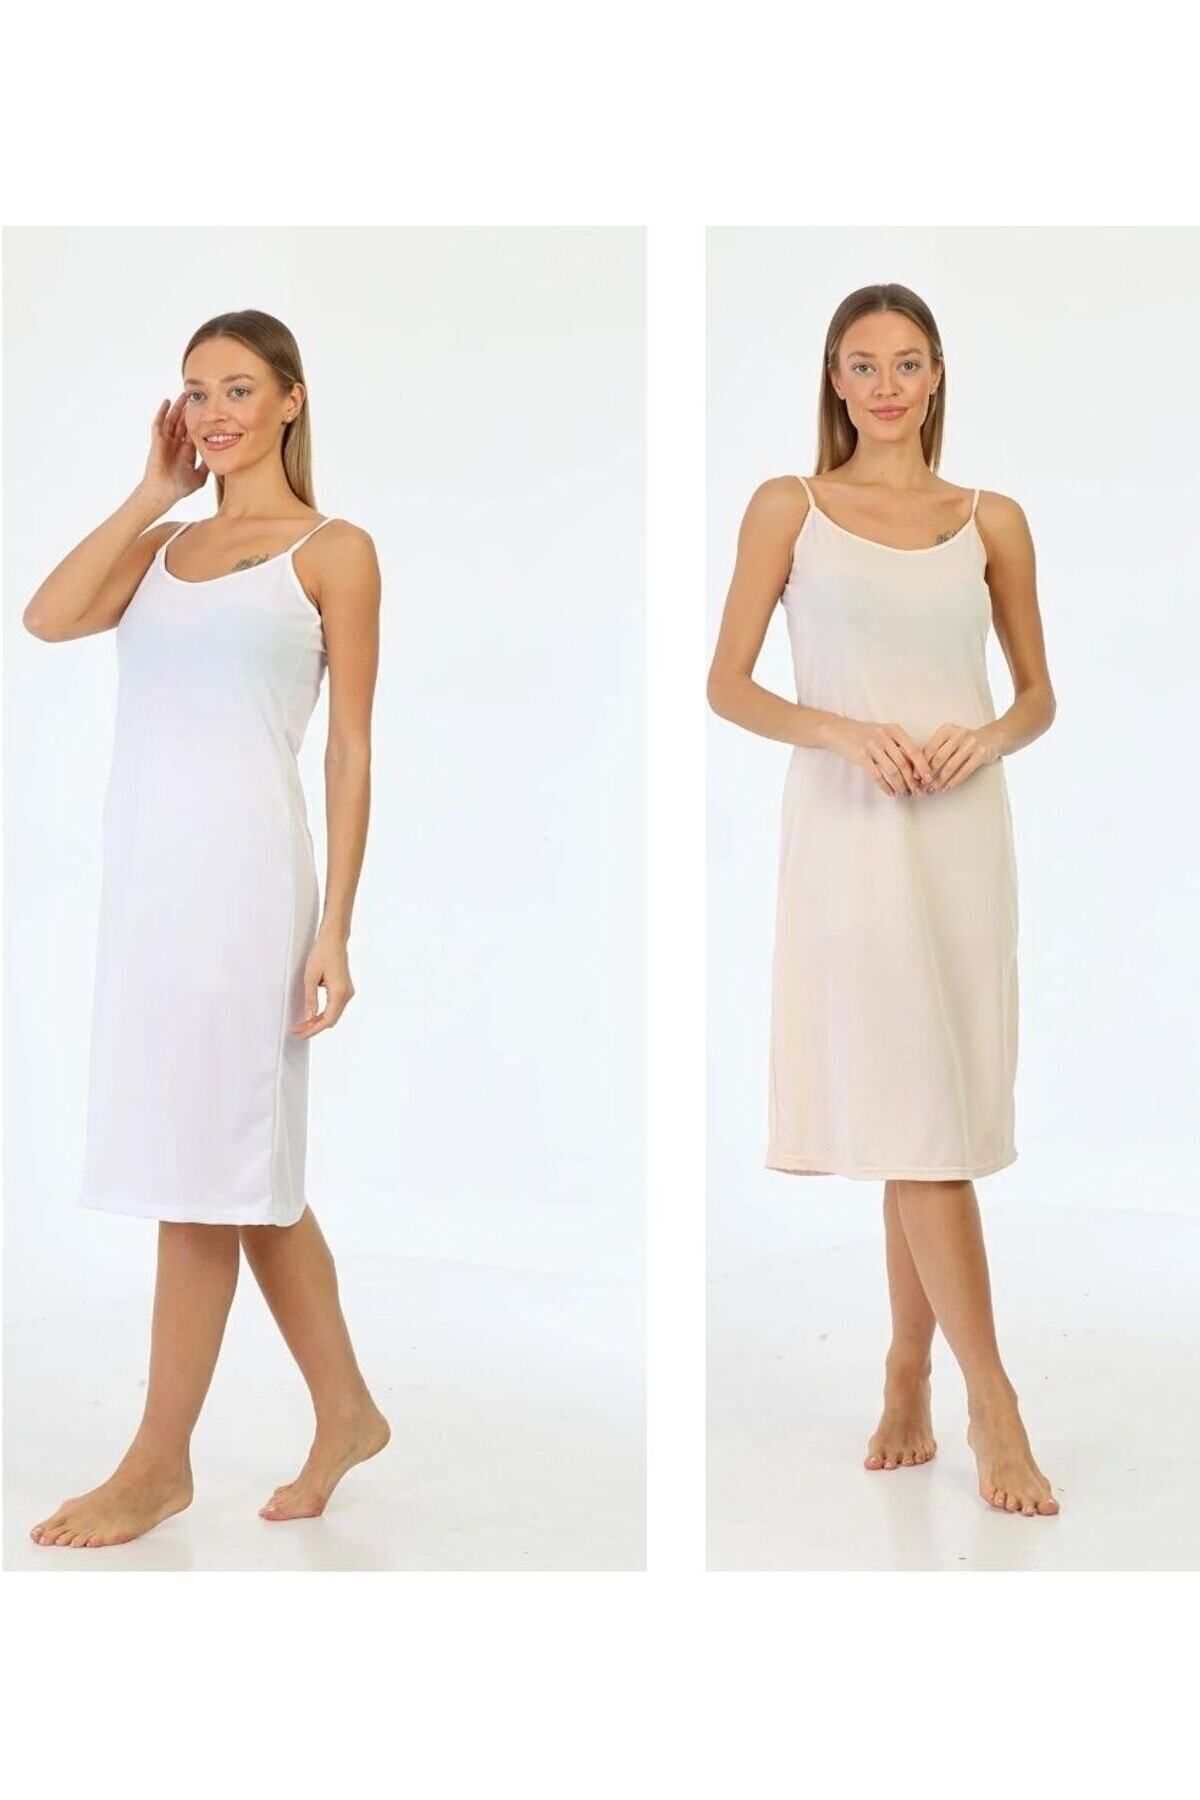 medipek İpaskılı Elbise Astarı içlik Jüpon Beyaz- Bej 2li Set